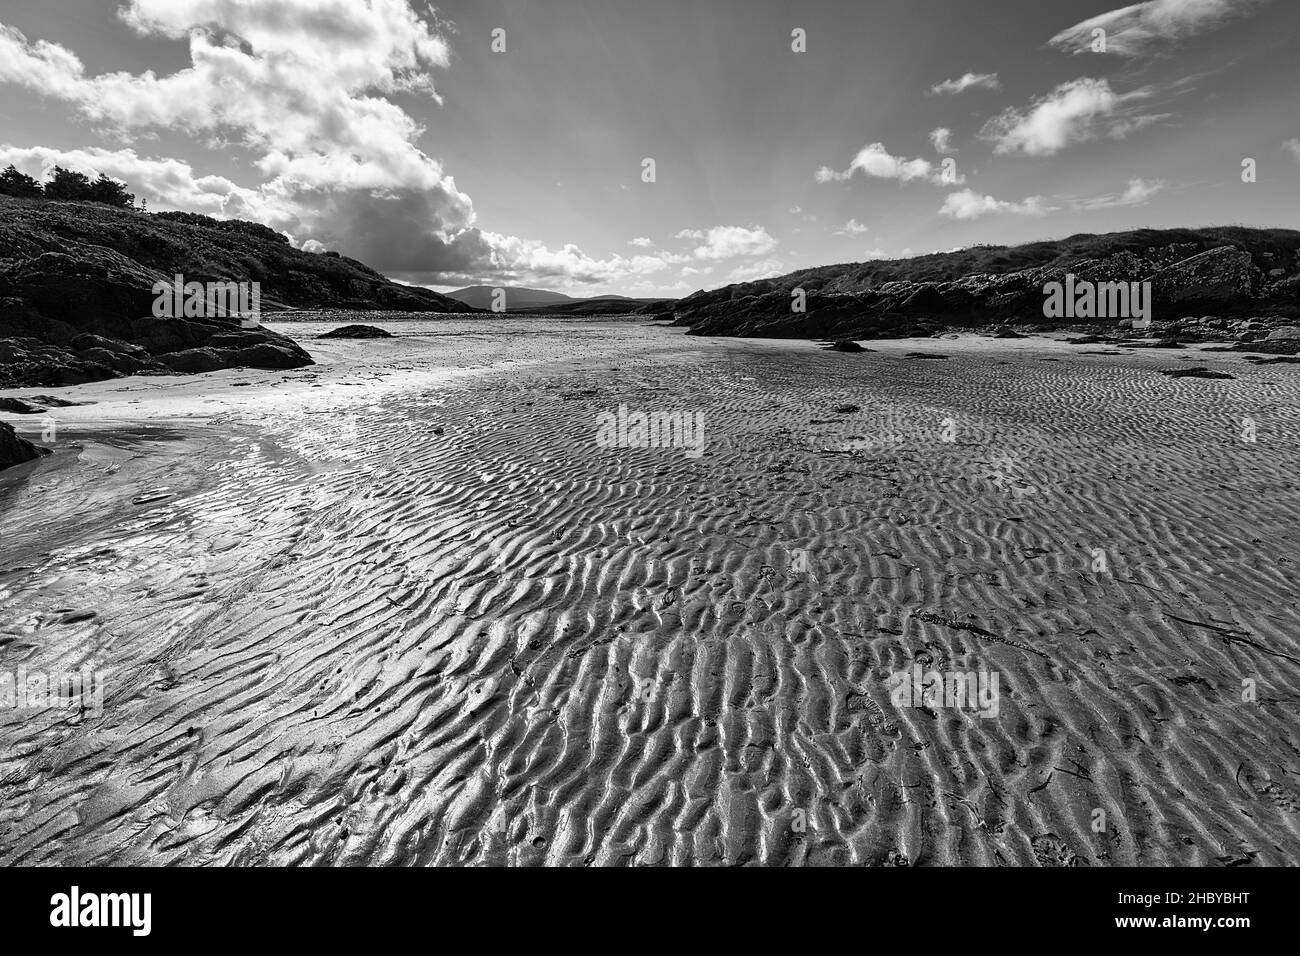 Ondulations dans le sable, contre-jour, White Strand, Castlecove, Ring of Kerry Panoramic Road, côte Atlantique, péninsule d'Iveragh, Irlande Banque D'Images